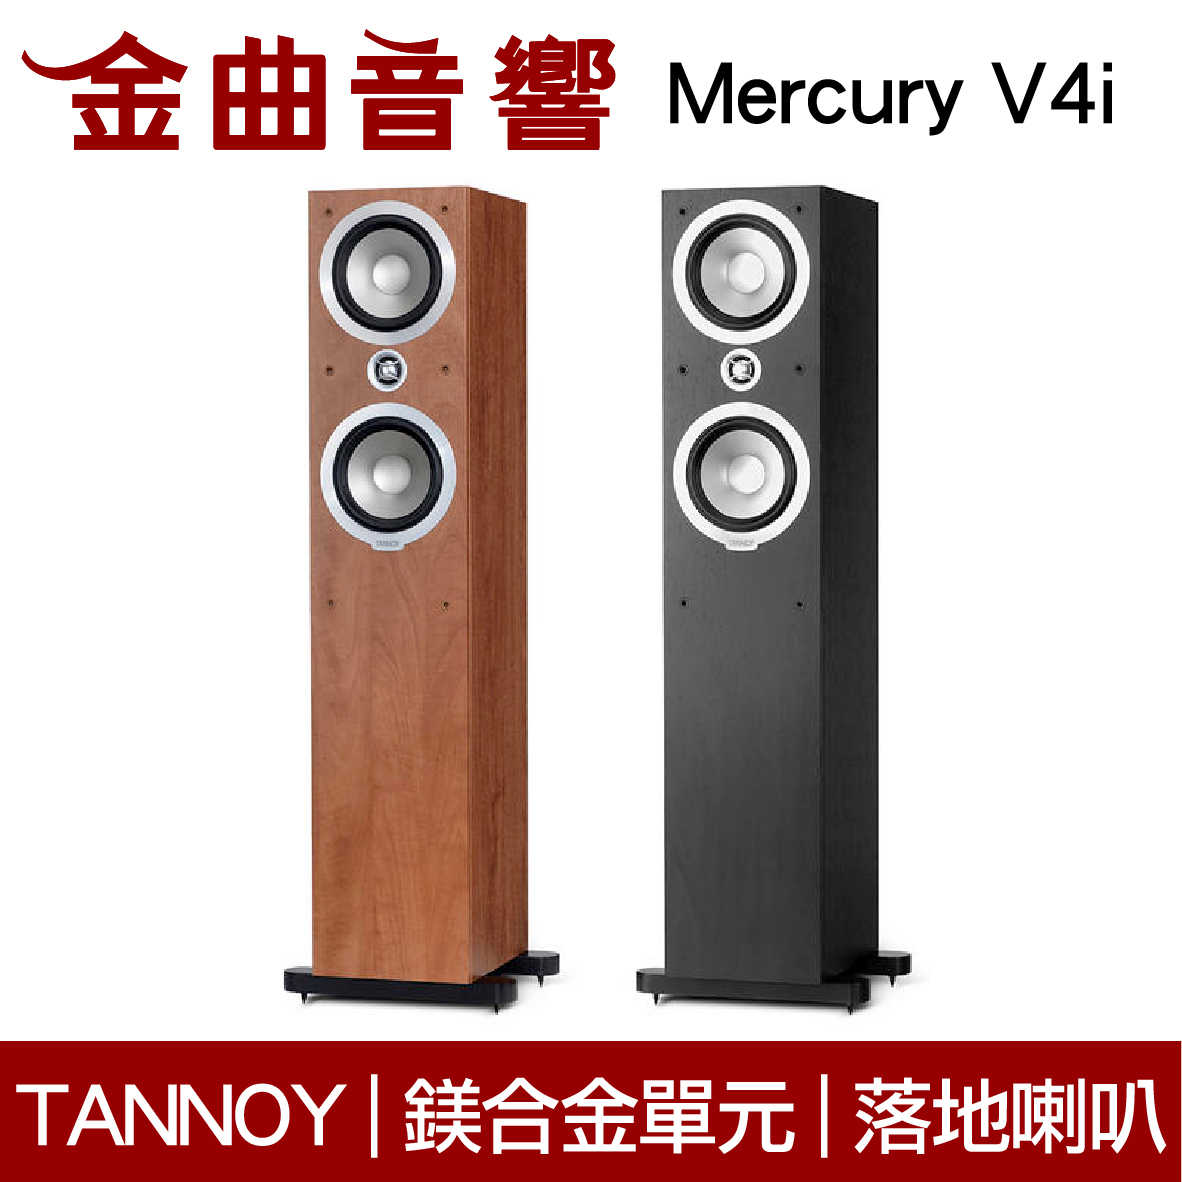 英國 TANNOY Mercury V4i 鎂合金高音單元 鍍銀無氧銅 落地式喇叭 | 金曲音響